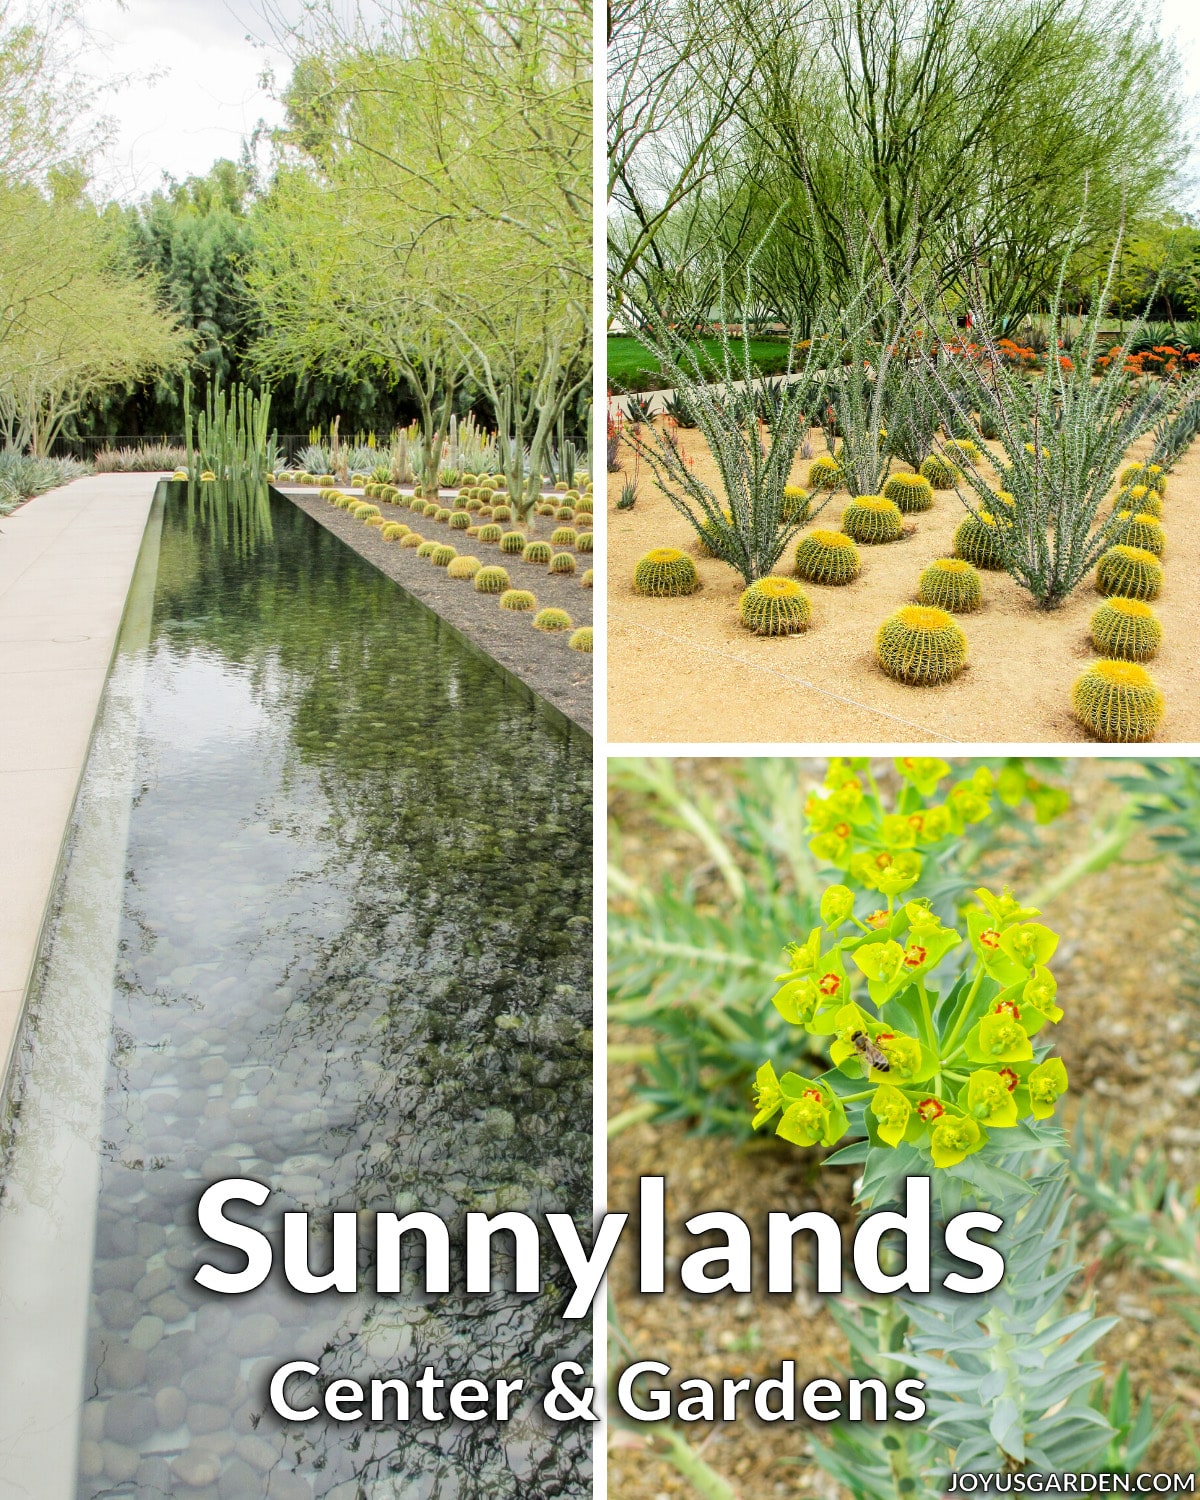  Trung tâm và Vườn Sunnylands ở Palm Springs